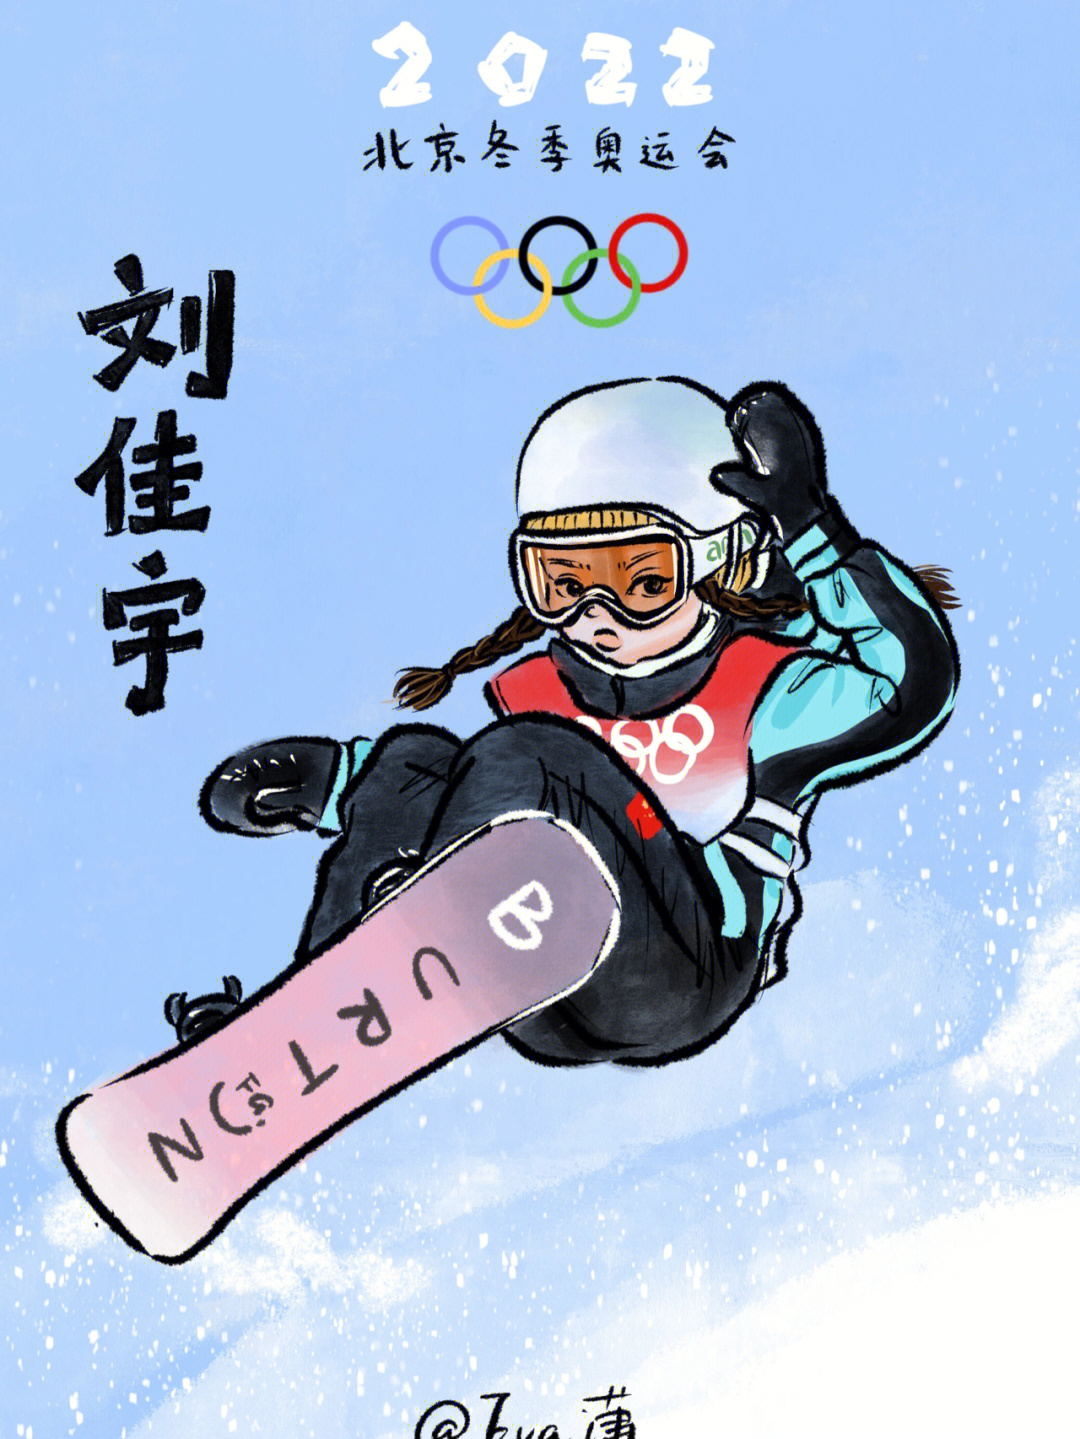 冬奥会滑雪运动员绘画图片